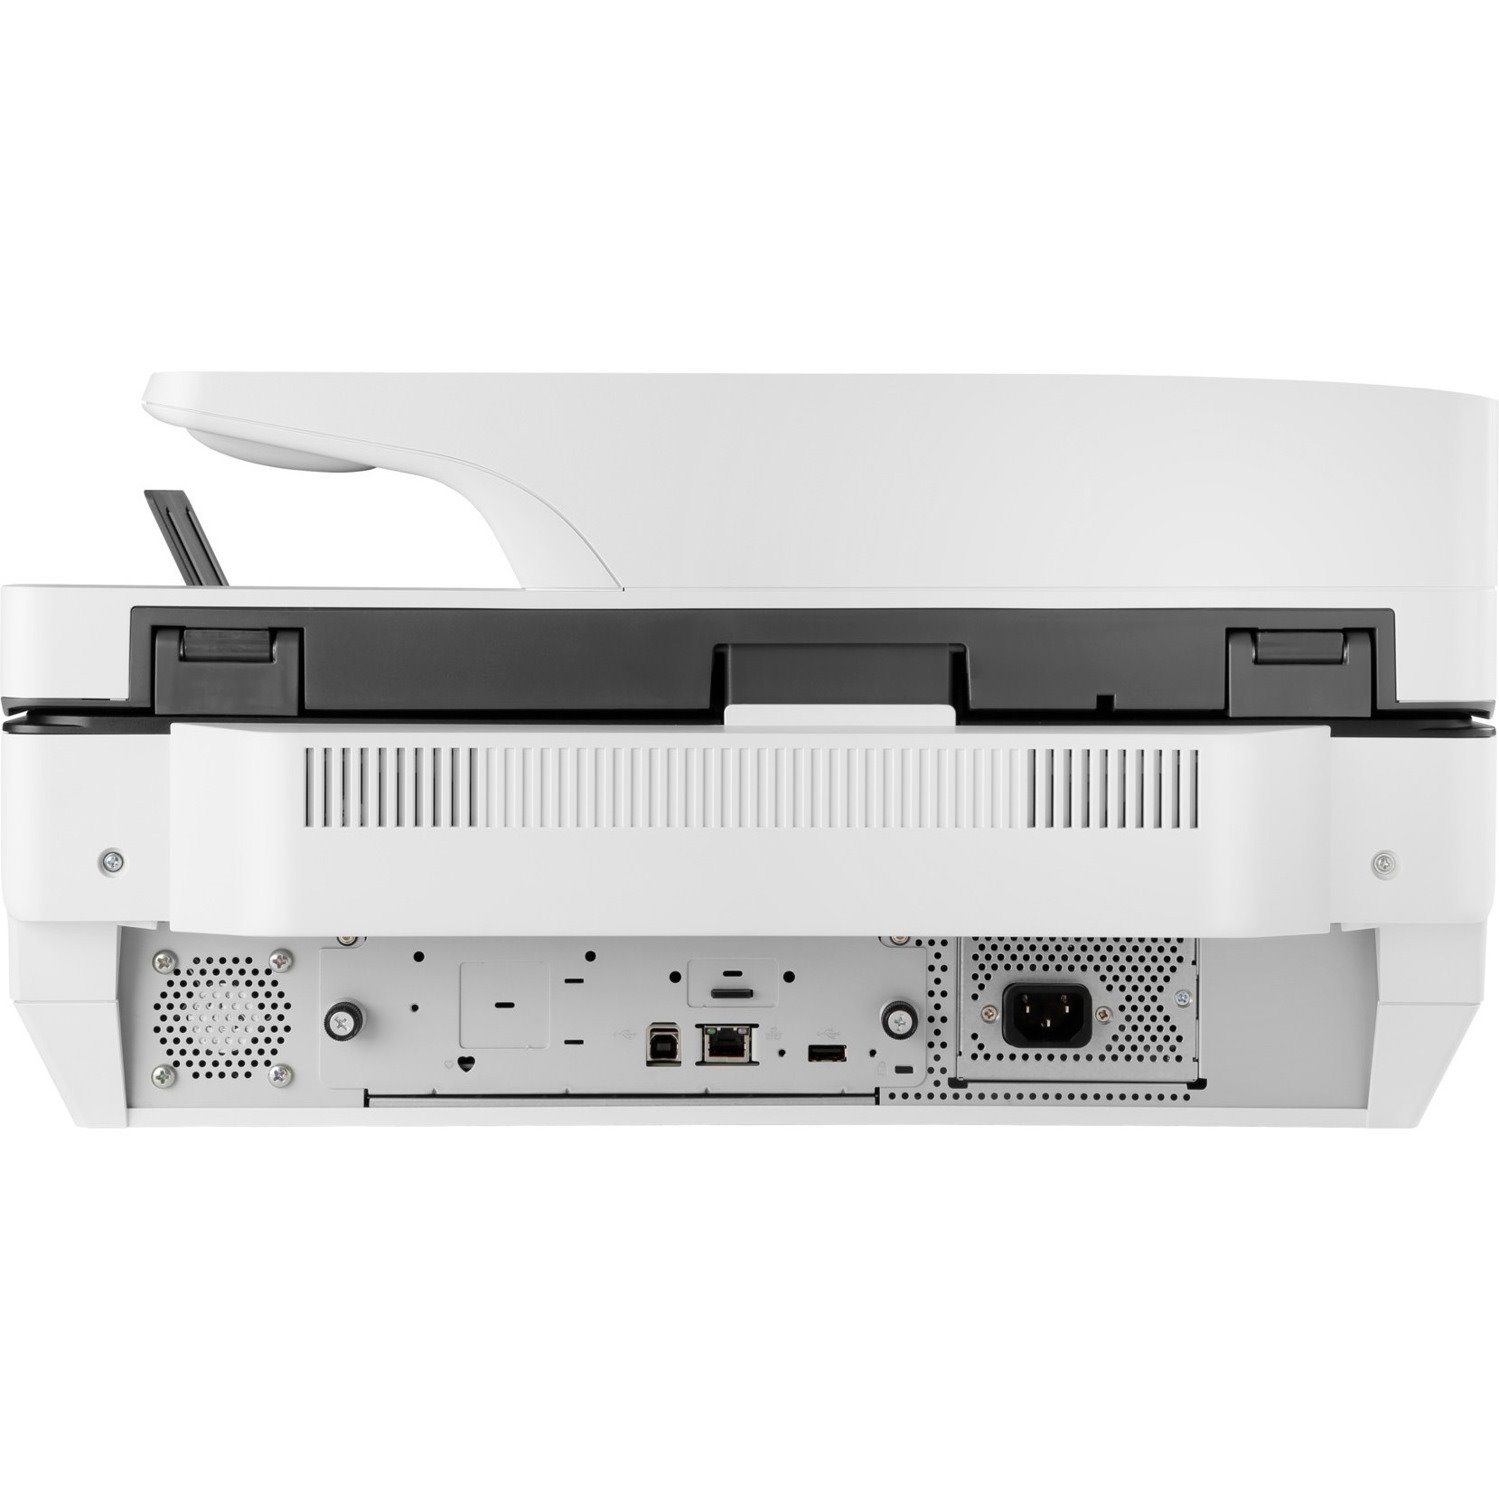 HP Digital Sender 8500 Sheetfed Scanner - 600 dpi Optical